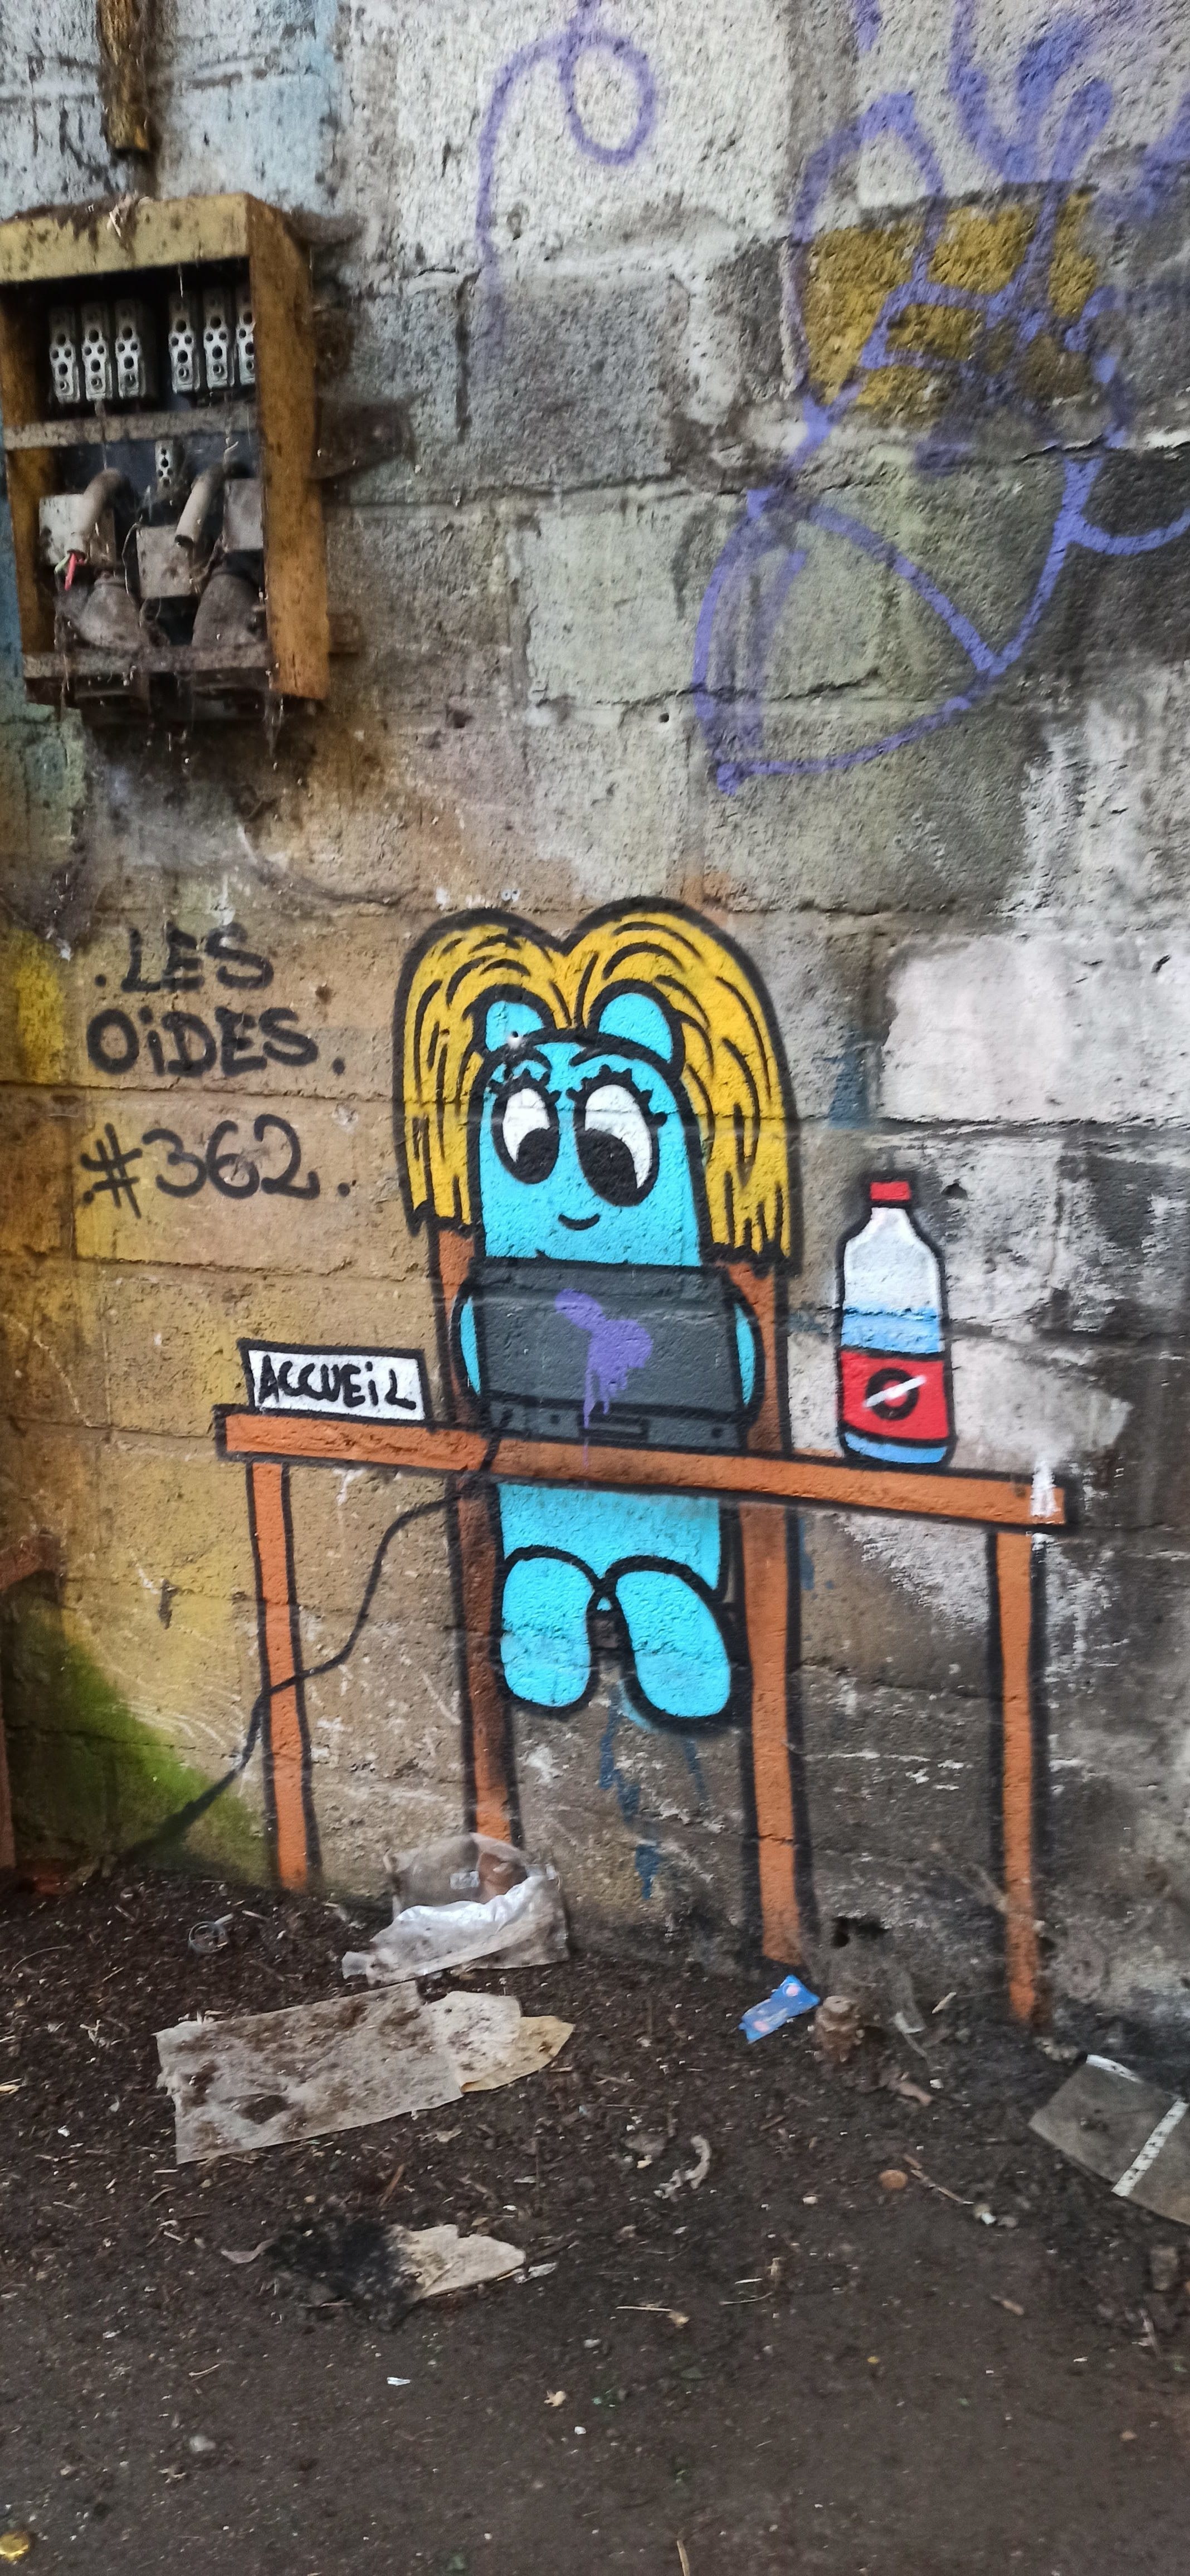 Graffiti 4831 Les oides #362 de Les Oides capturé par Rabot à Lorient France